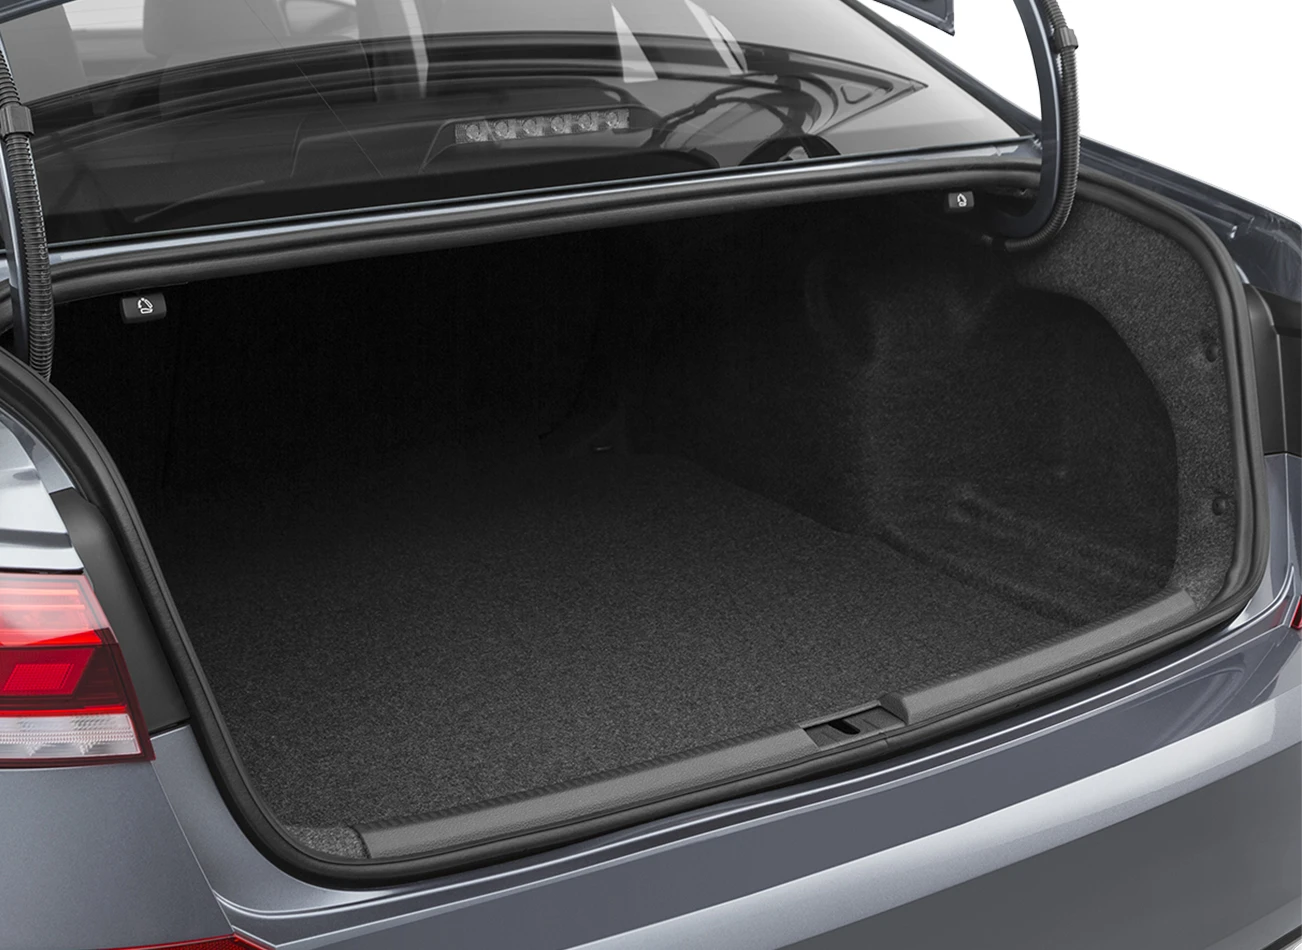 2020 Volkswagen Passat Review: Trunk cargo space | CarMax